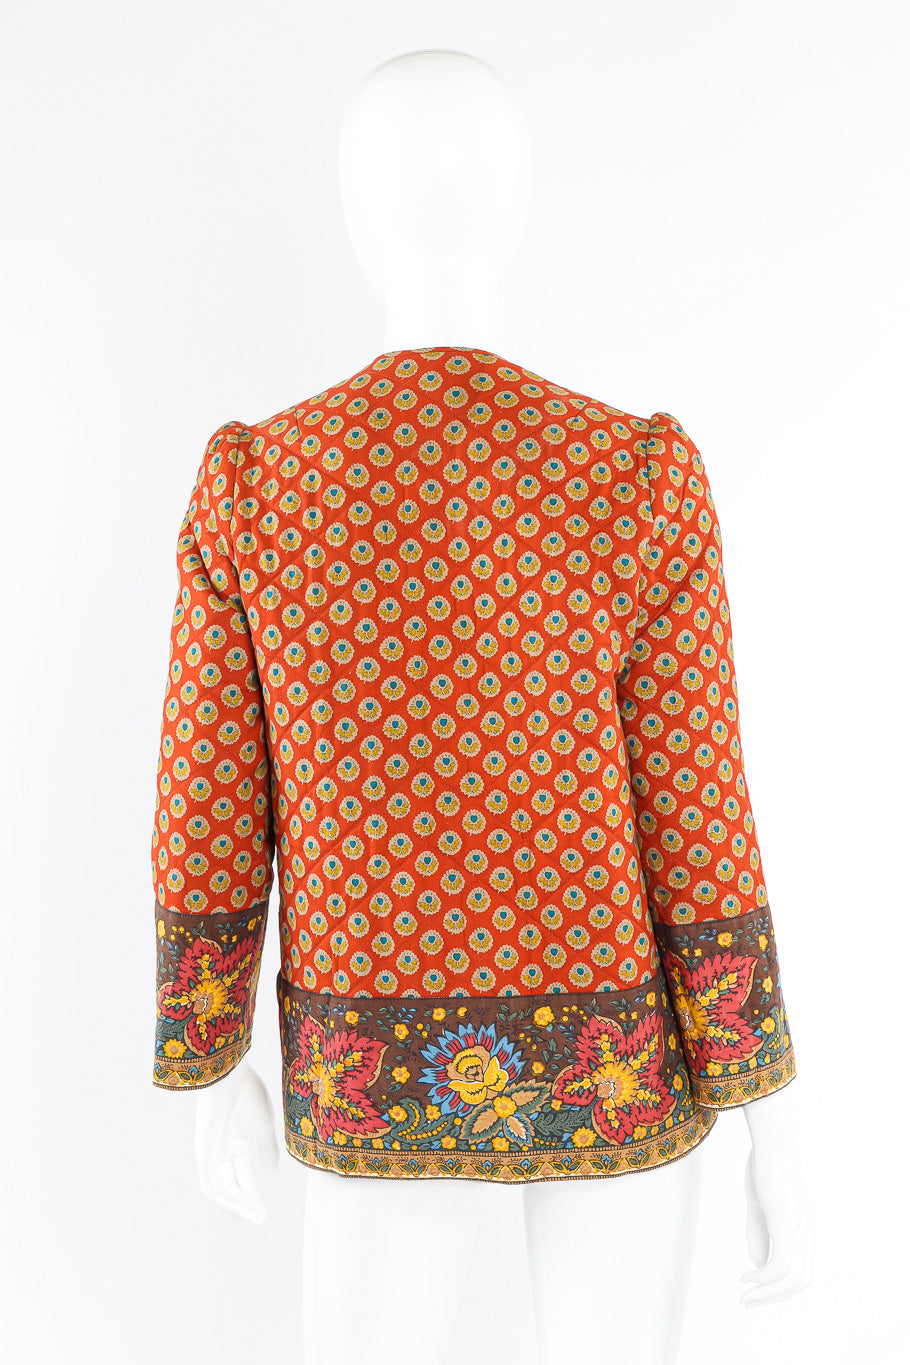 Batik print quilted jacket by La Provence on mannequin back @recessla